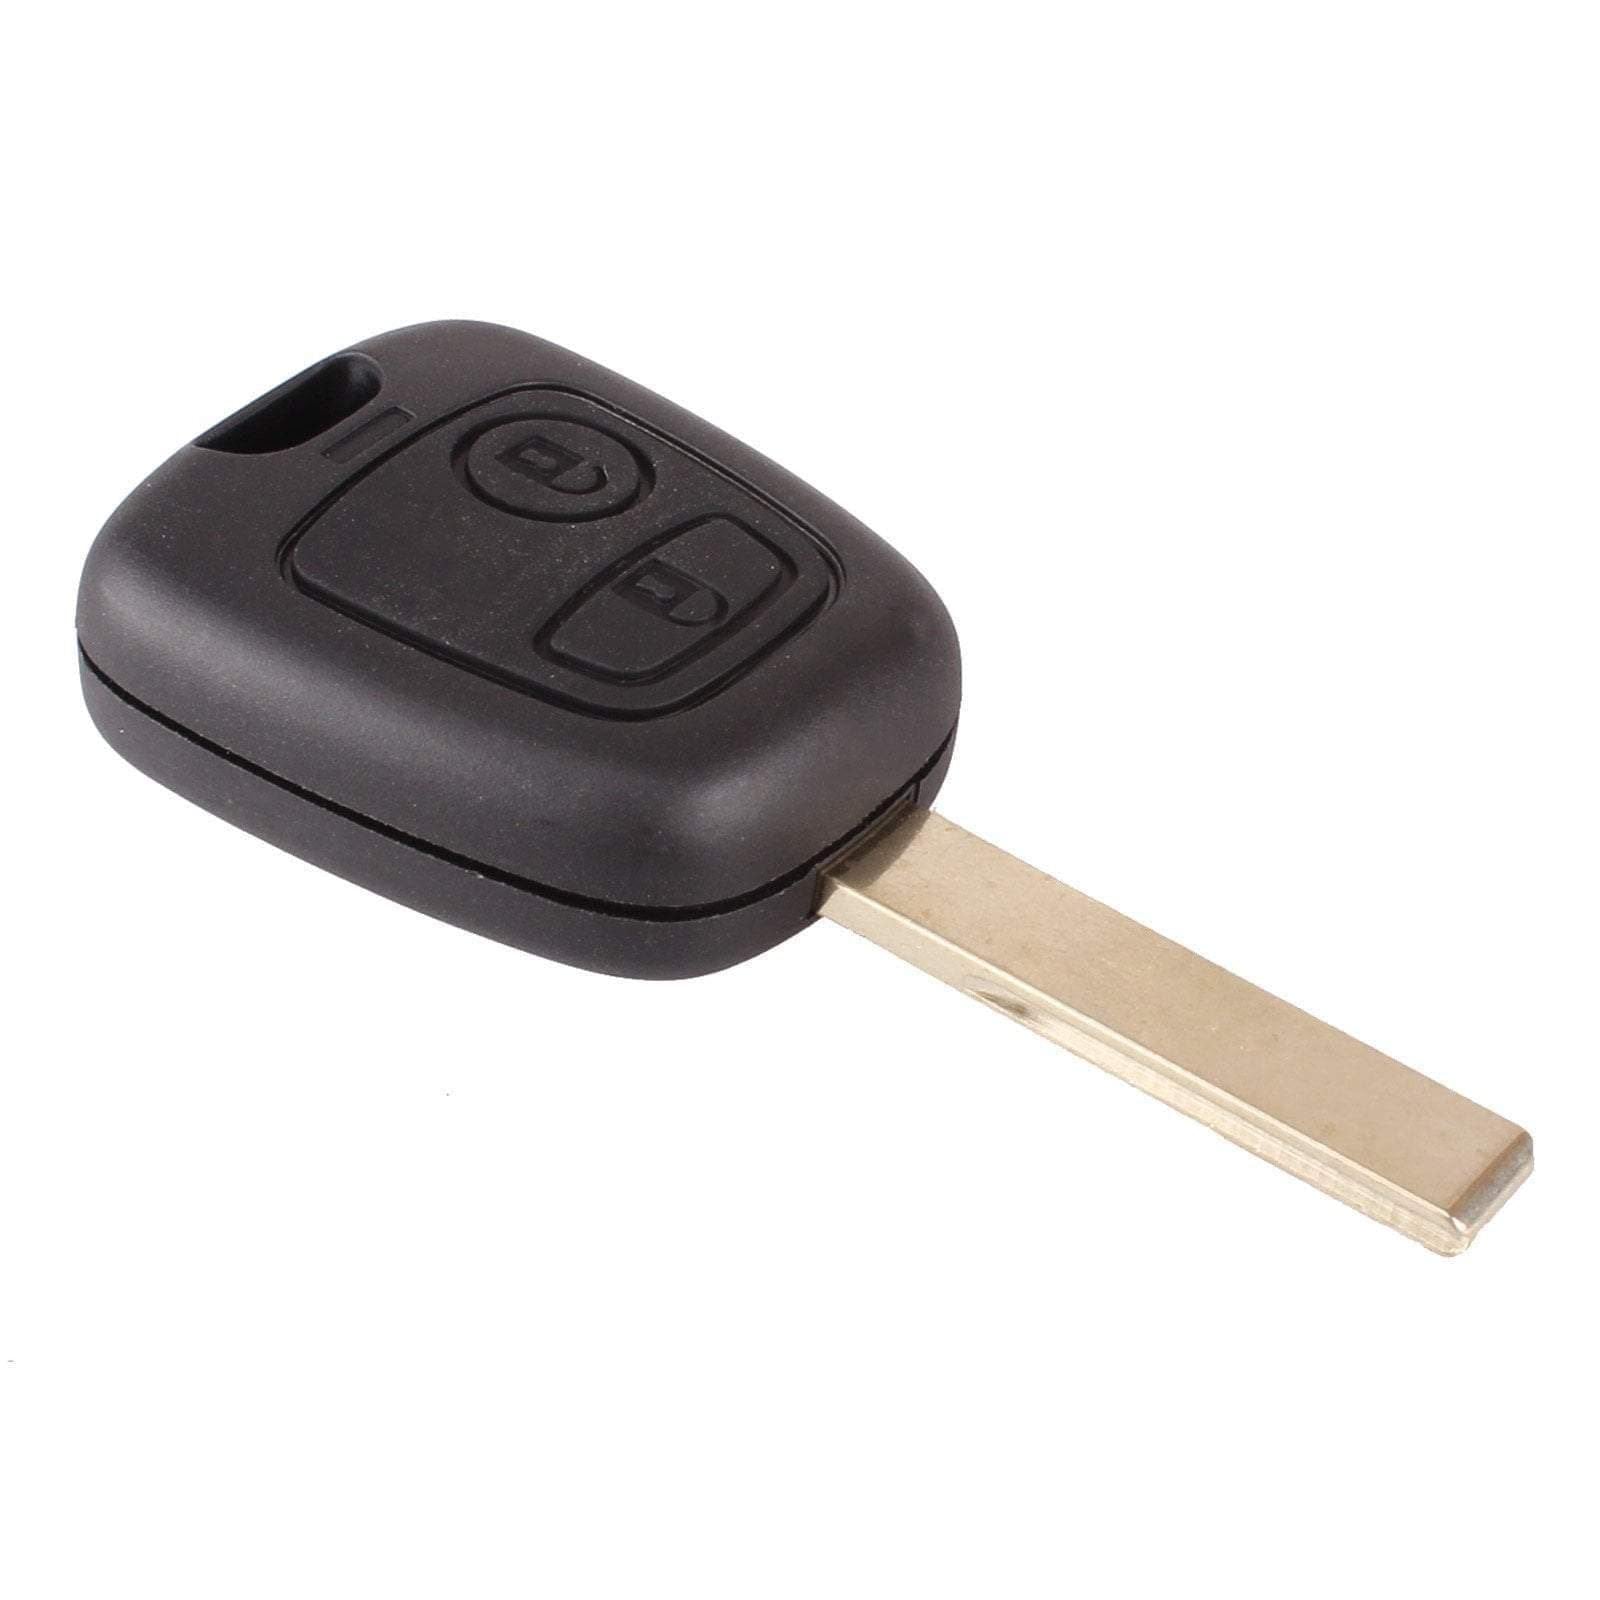 Fekete színű, 2 gombos Citroen kulcs, kulcsház HU83 kulcsszárral.